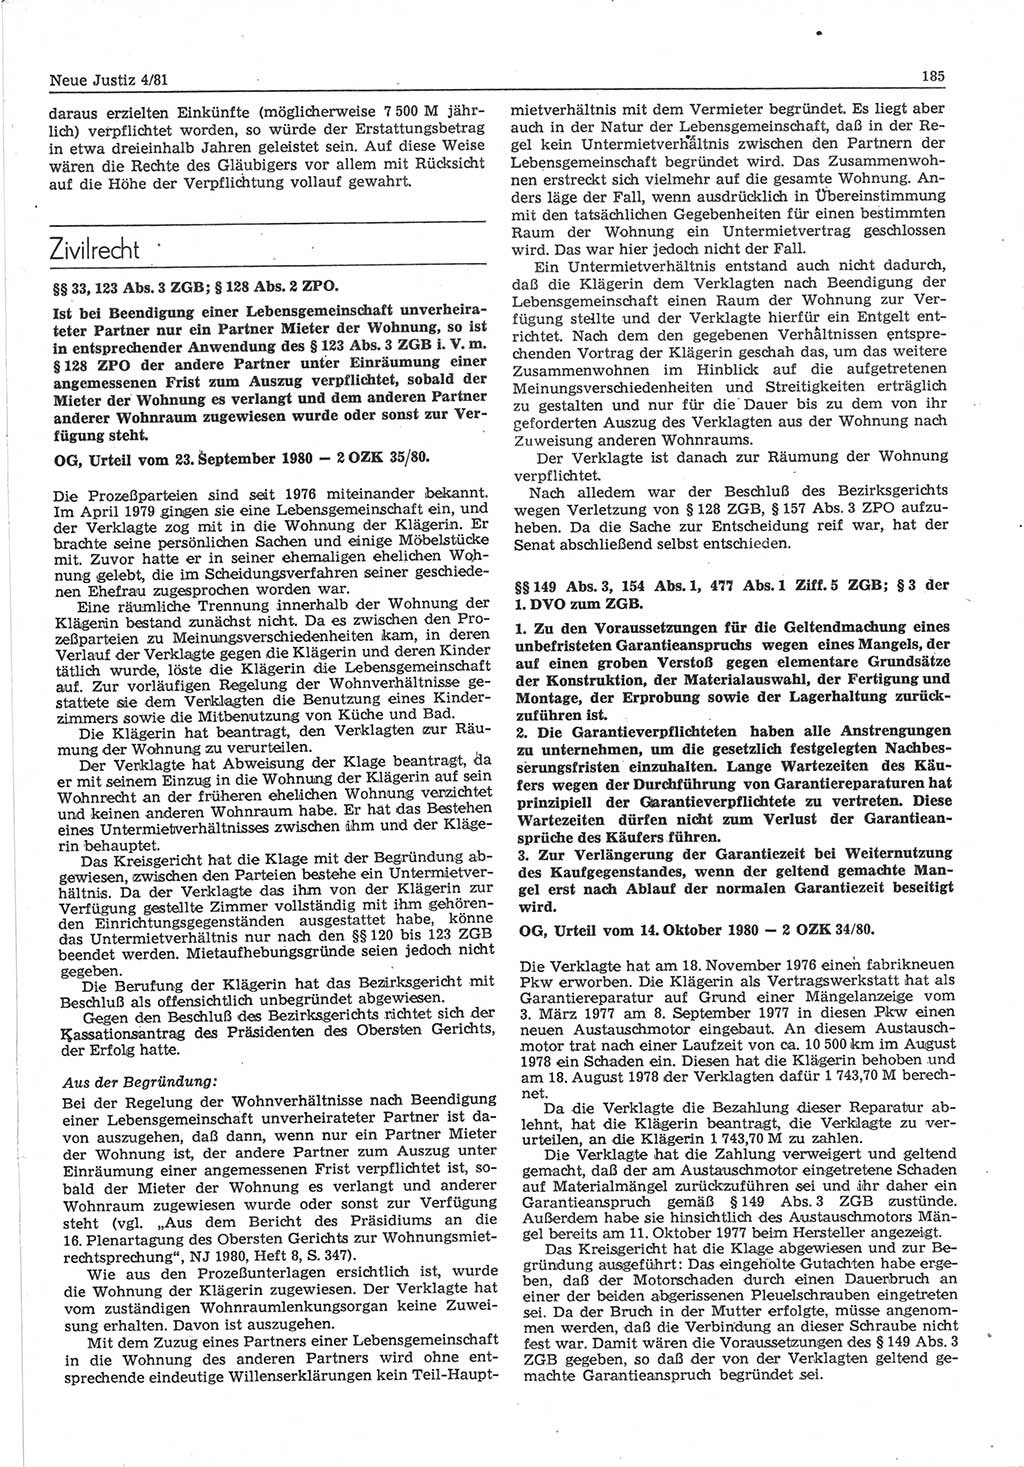 Neue Justiz (NJ), Zeitschrift für sozialistisches Recht und Gesetzlichkeit [Deutsche Demokratische Republik (DDR)], 35. Jahrgang 1981, Seite 185 (NJ DDR 1981, S. 185)